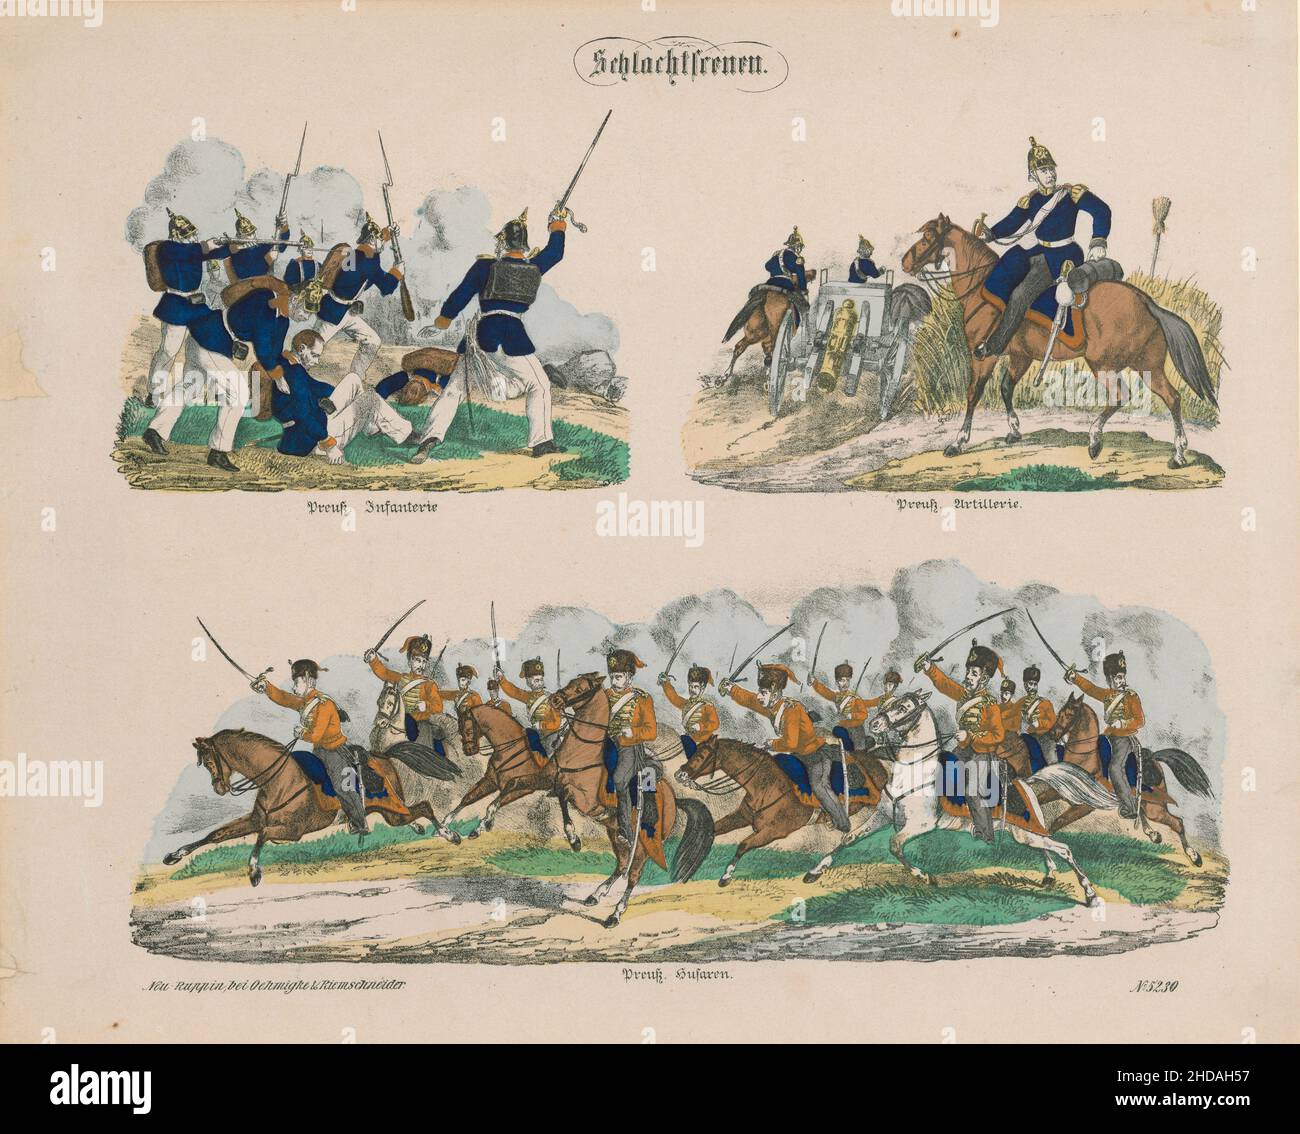 Litografía de la vendimia: Ejército prusiano en escenas de batalla. 1866 Infarería prusiana, artillería prusiana, hussars prusianos Foto de stock